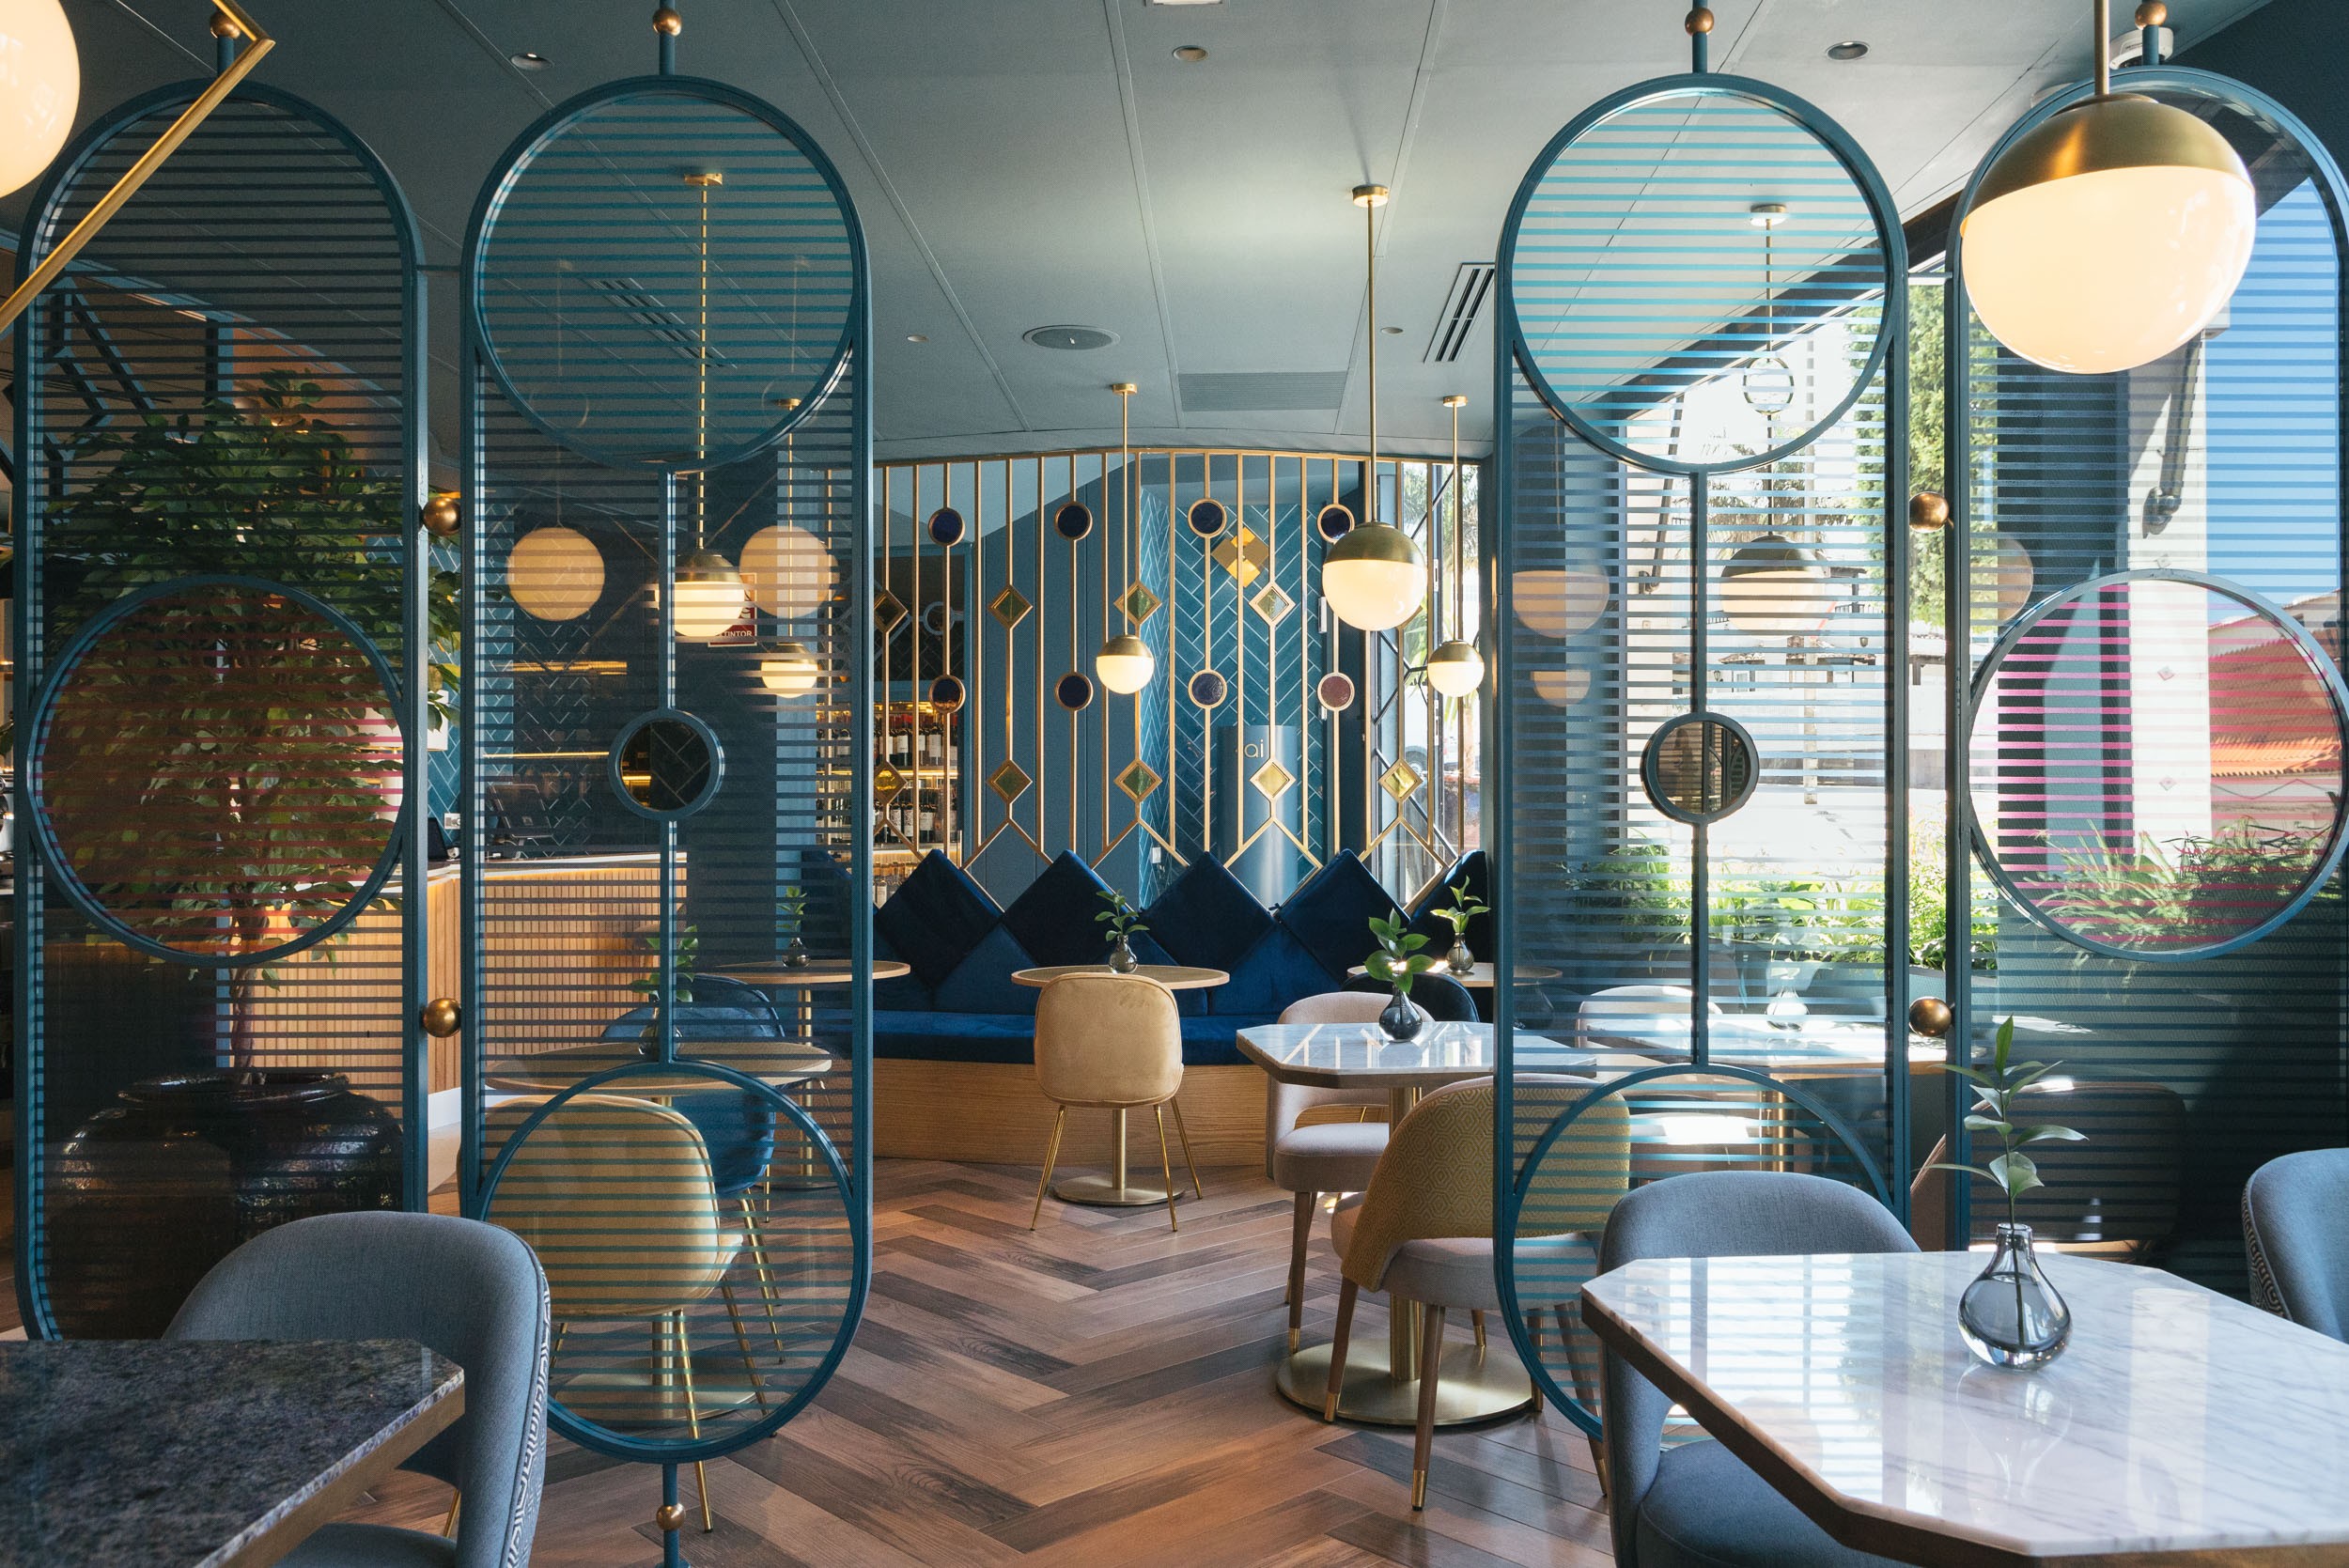 3 ideias de decoração deste restaurante para quem ama azul (Foto: Divulgação)